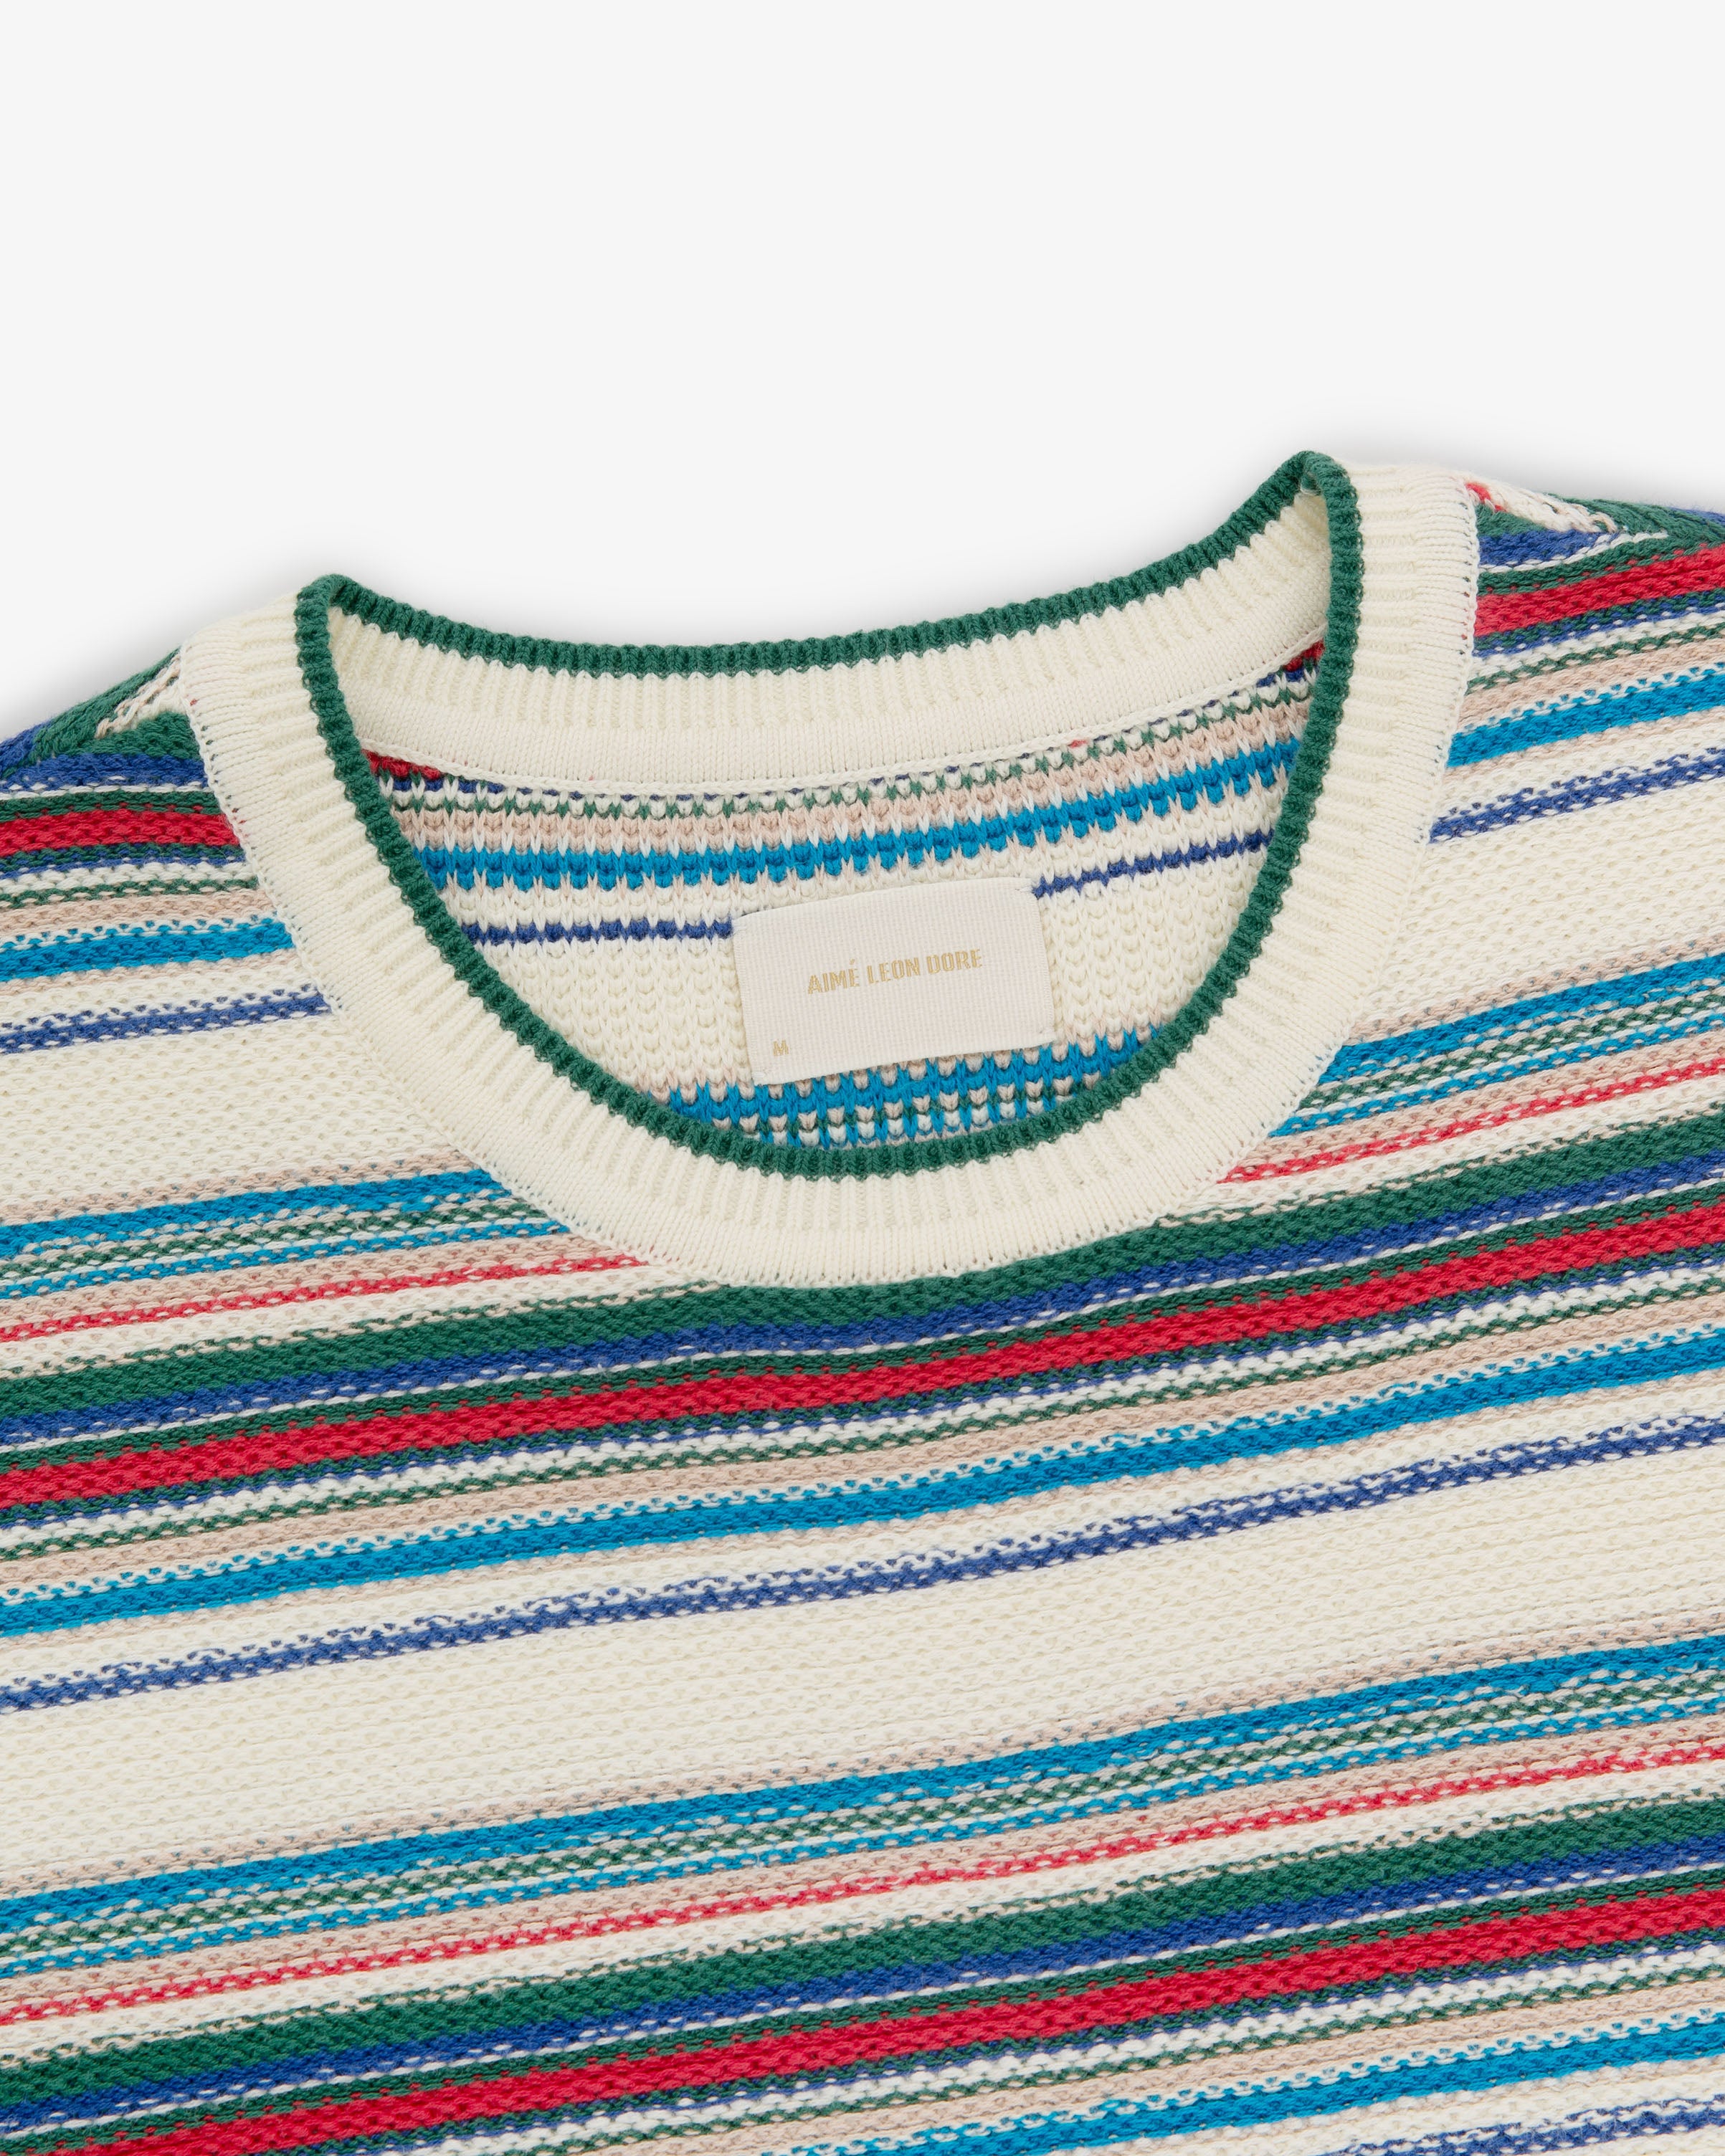 Jacquard Striped Sweater Tee